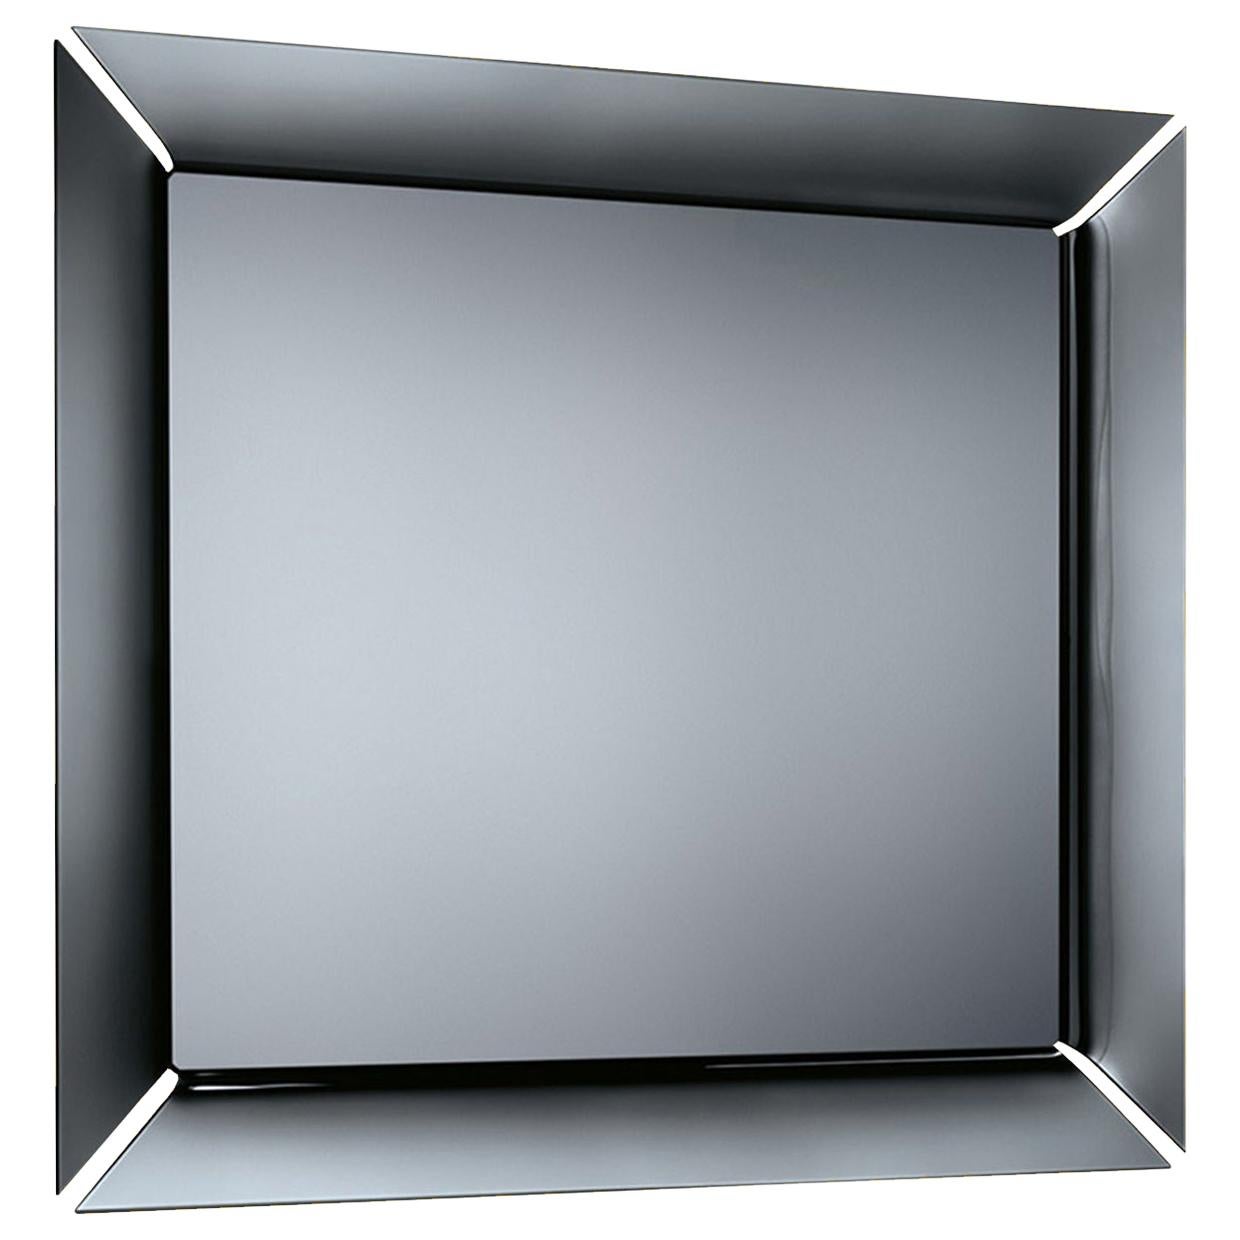 Miroir sur pied sans support Fiam Caadre 610 en verre incurvé, de Philippe Starck